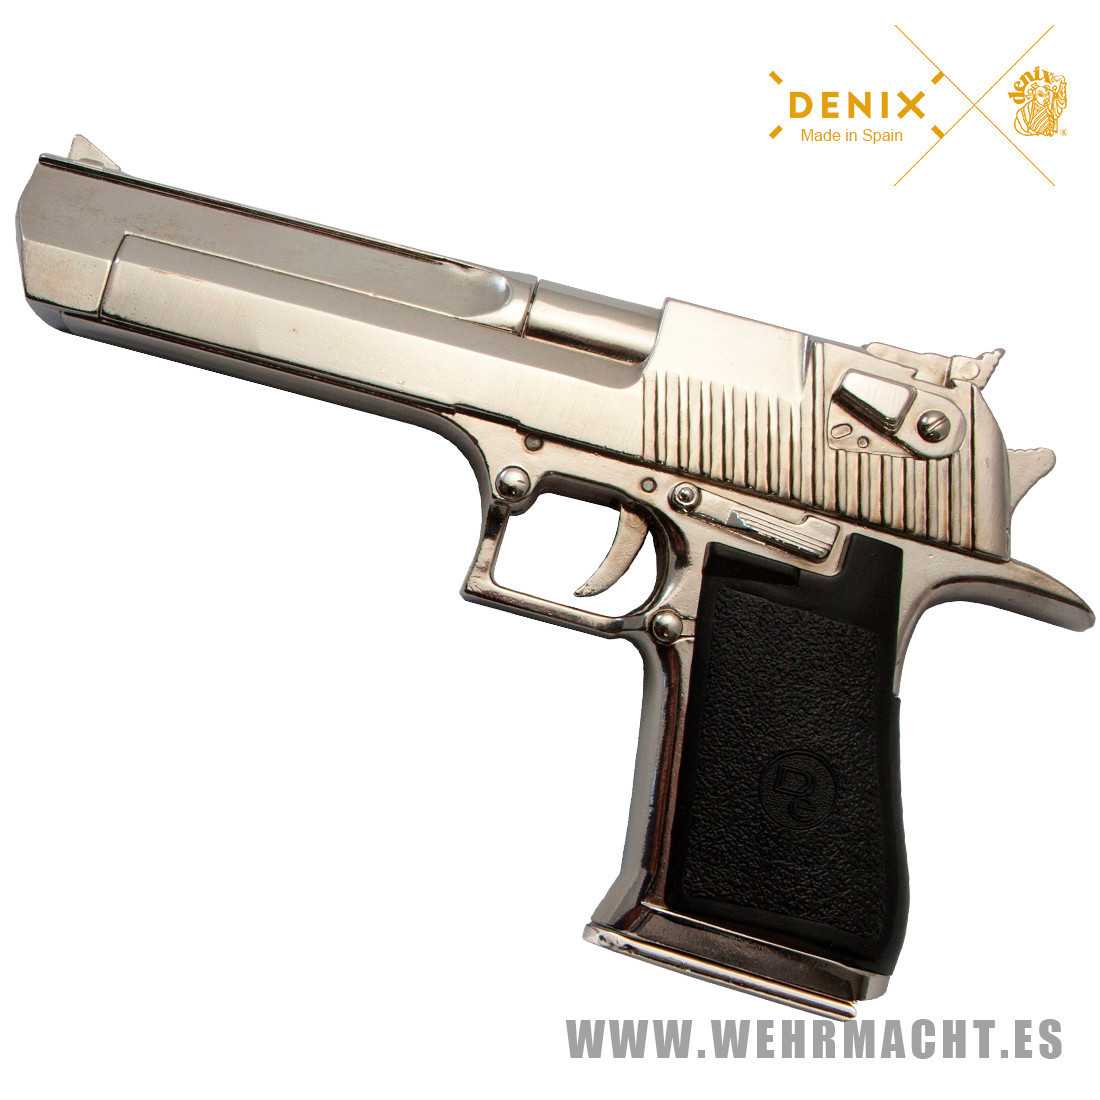 Denix - Magnum Desert Eagle Mark I Chromed